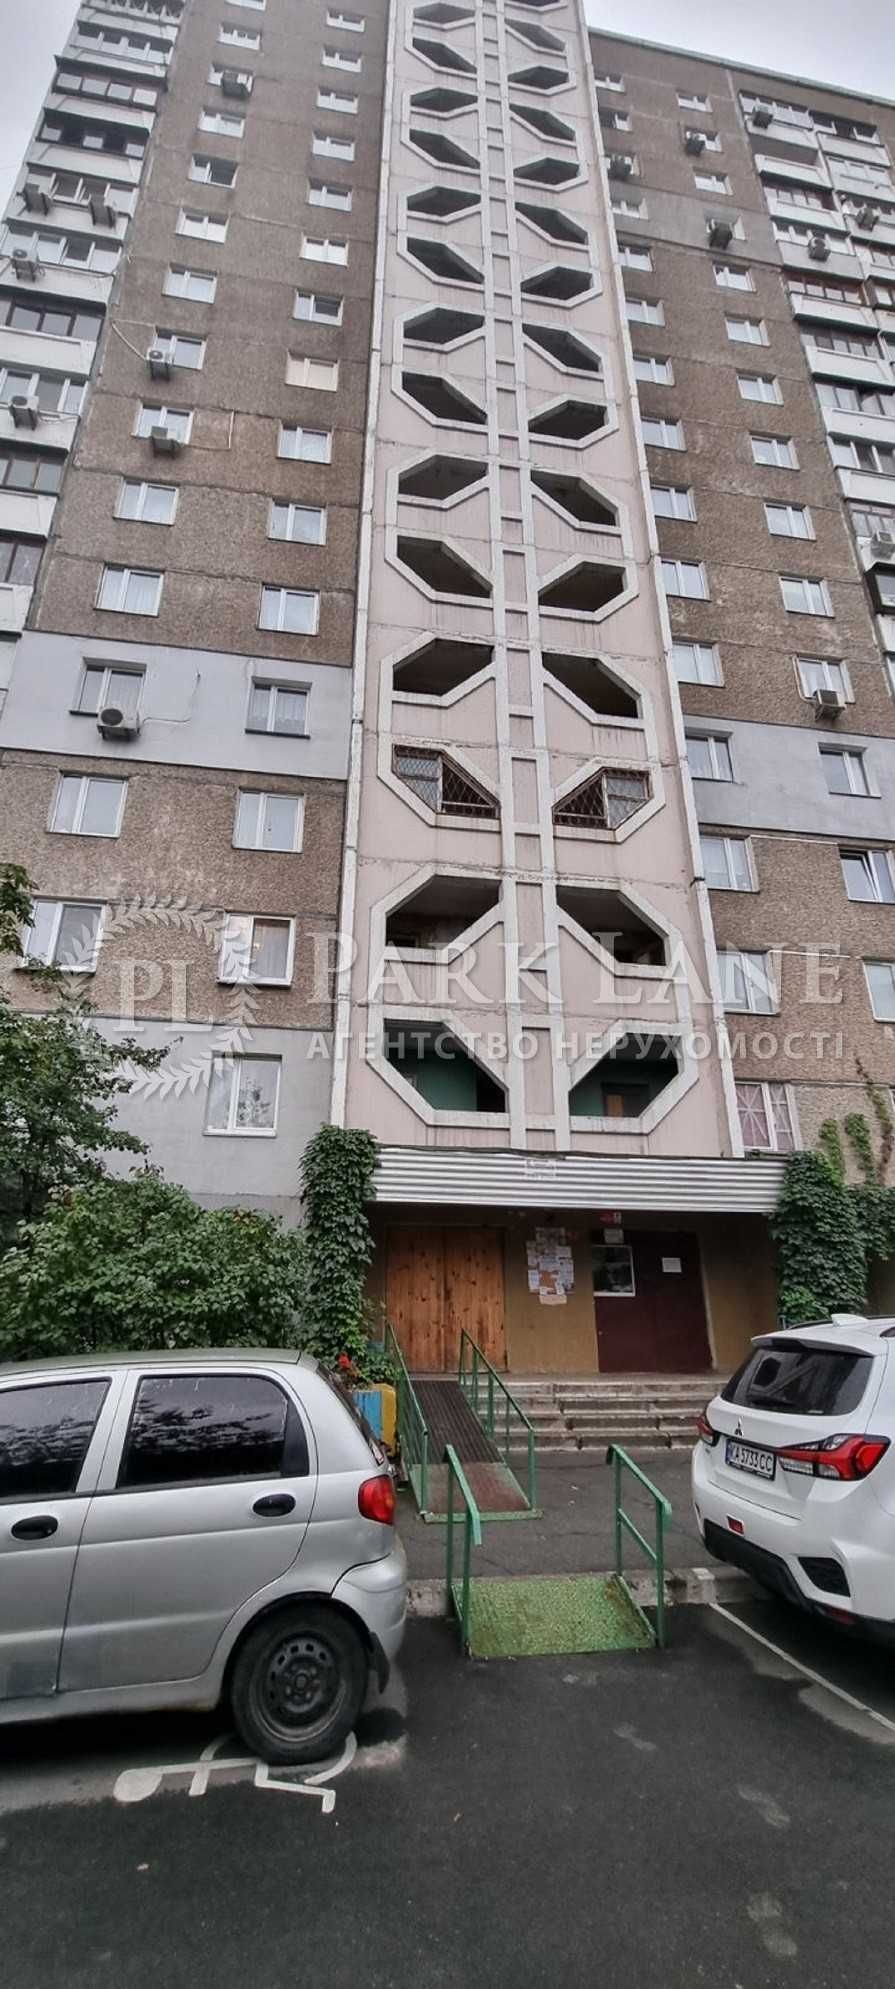 КРАЩА ЦІНА 3-к квартира Мишуги 3 метро ПОЗНЯКИ 2 хв пішки